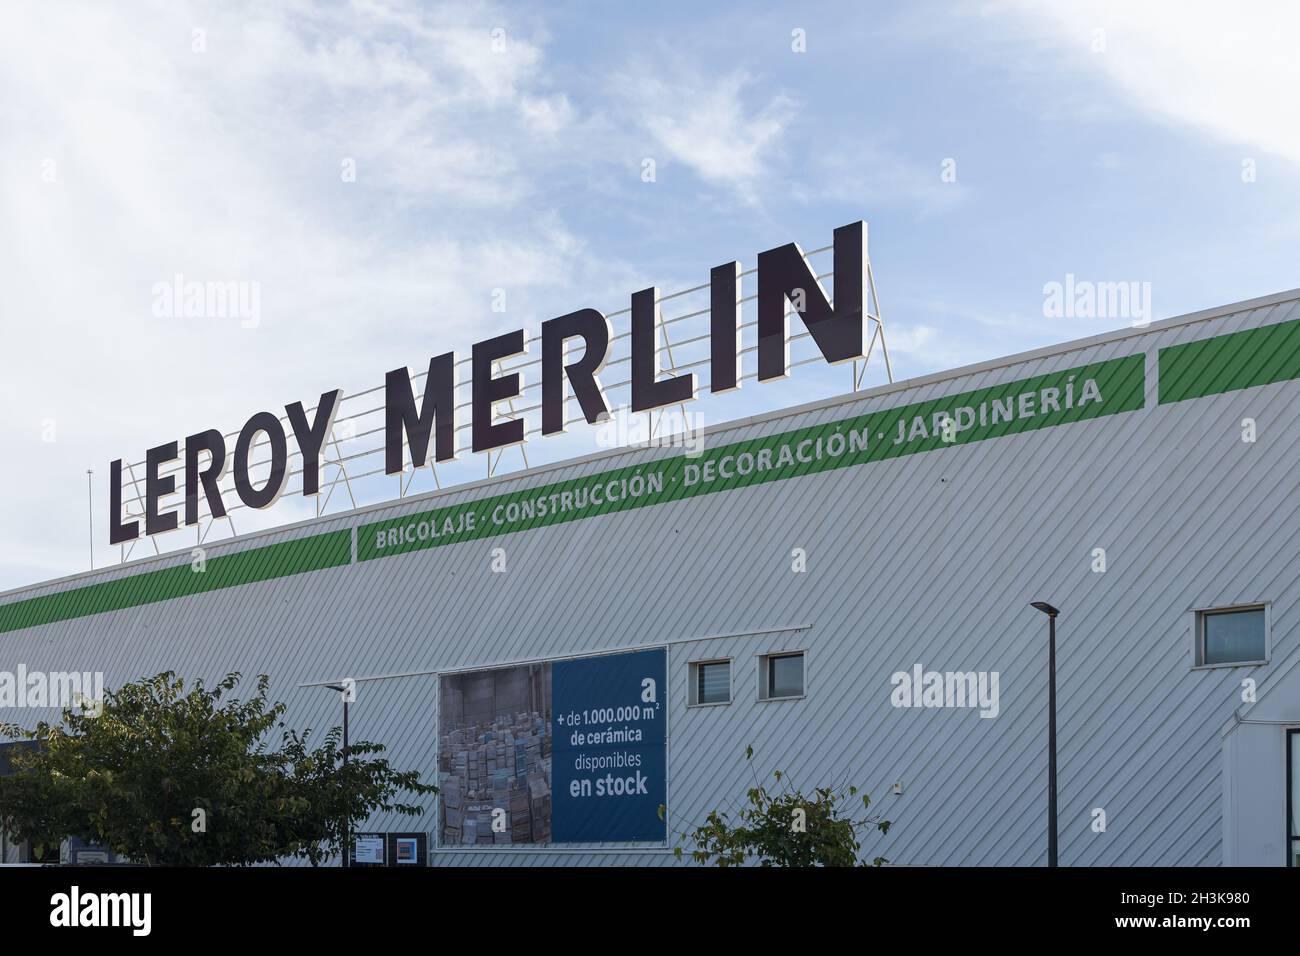 LA POBLA DE VALLBONA, ESPAÑA - 27 DE OCTUBRE de 2021: Leroy Merlin es un minorista francés de jardinería y mejora de casas Foto de stock